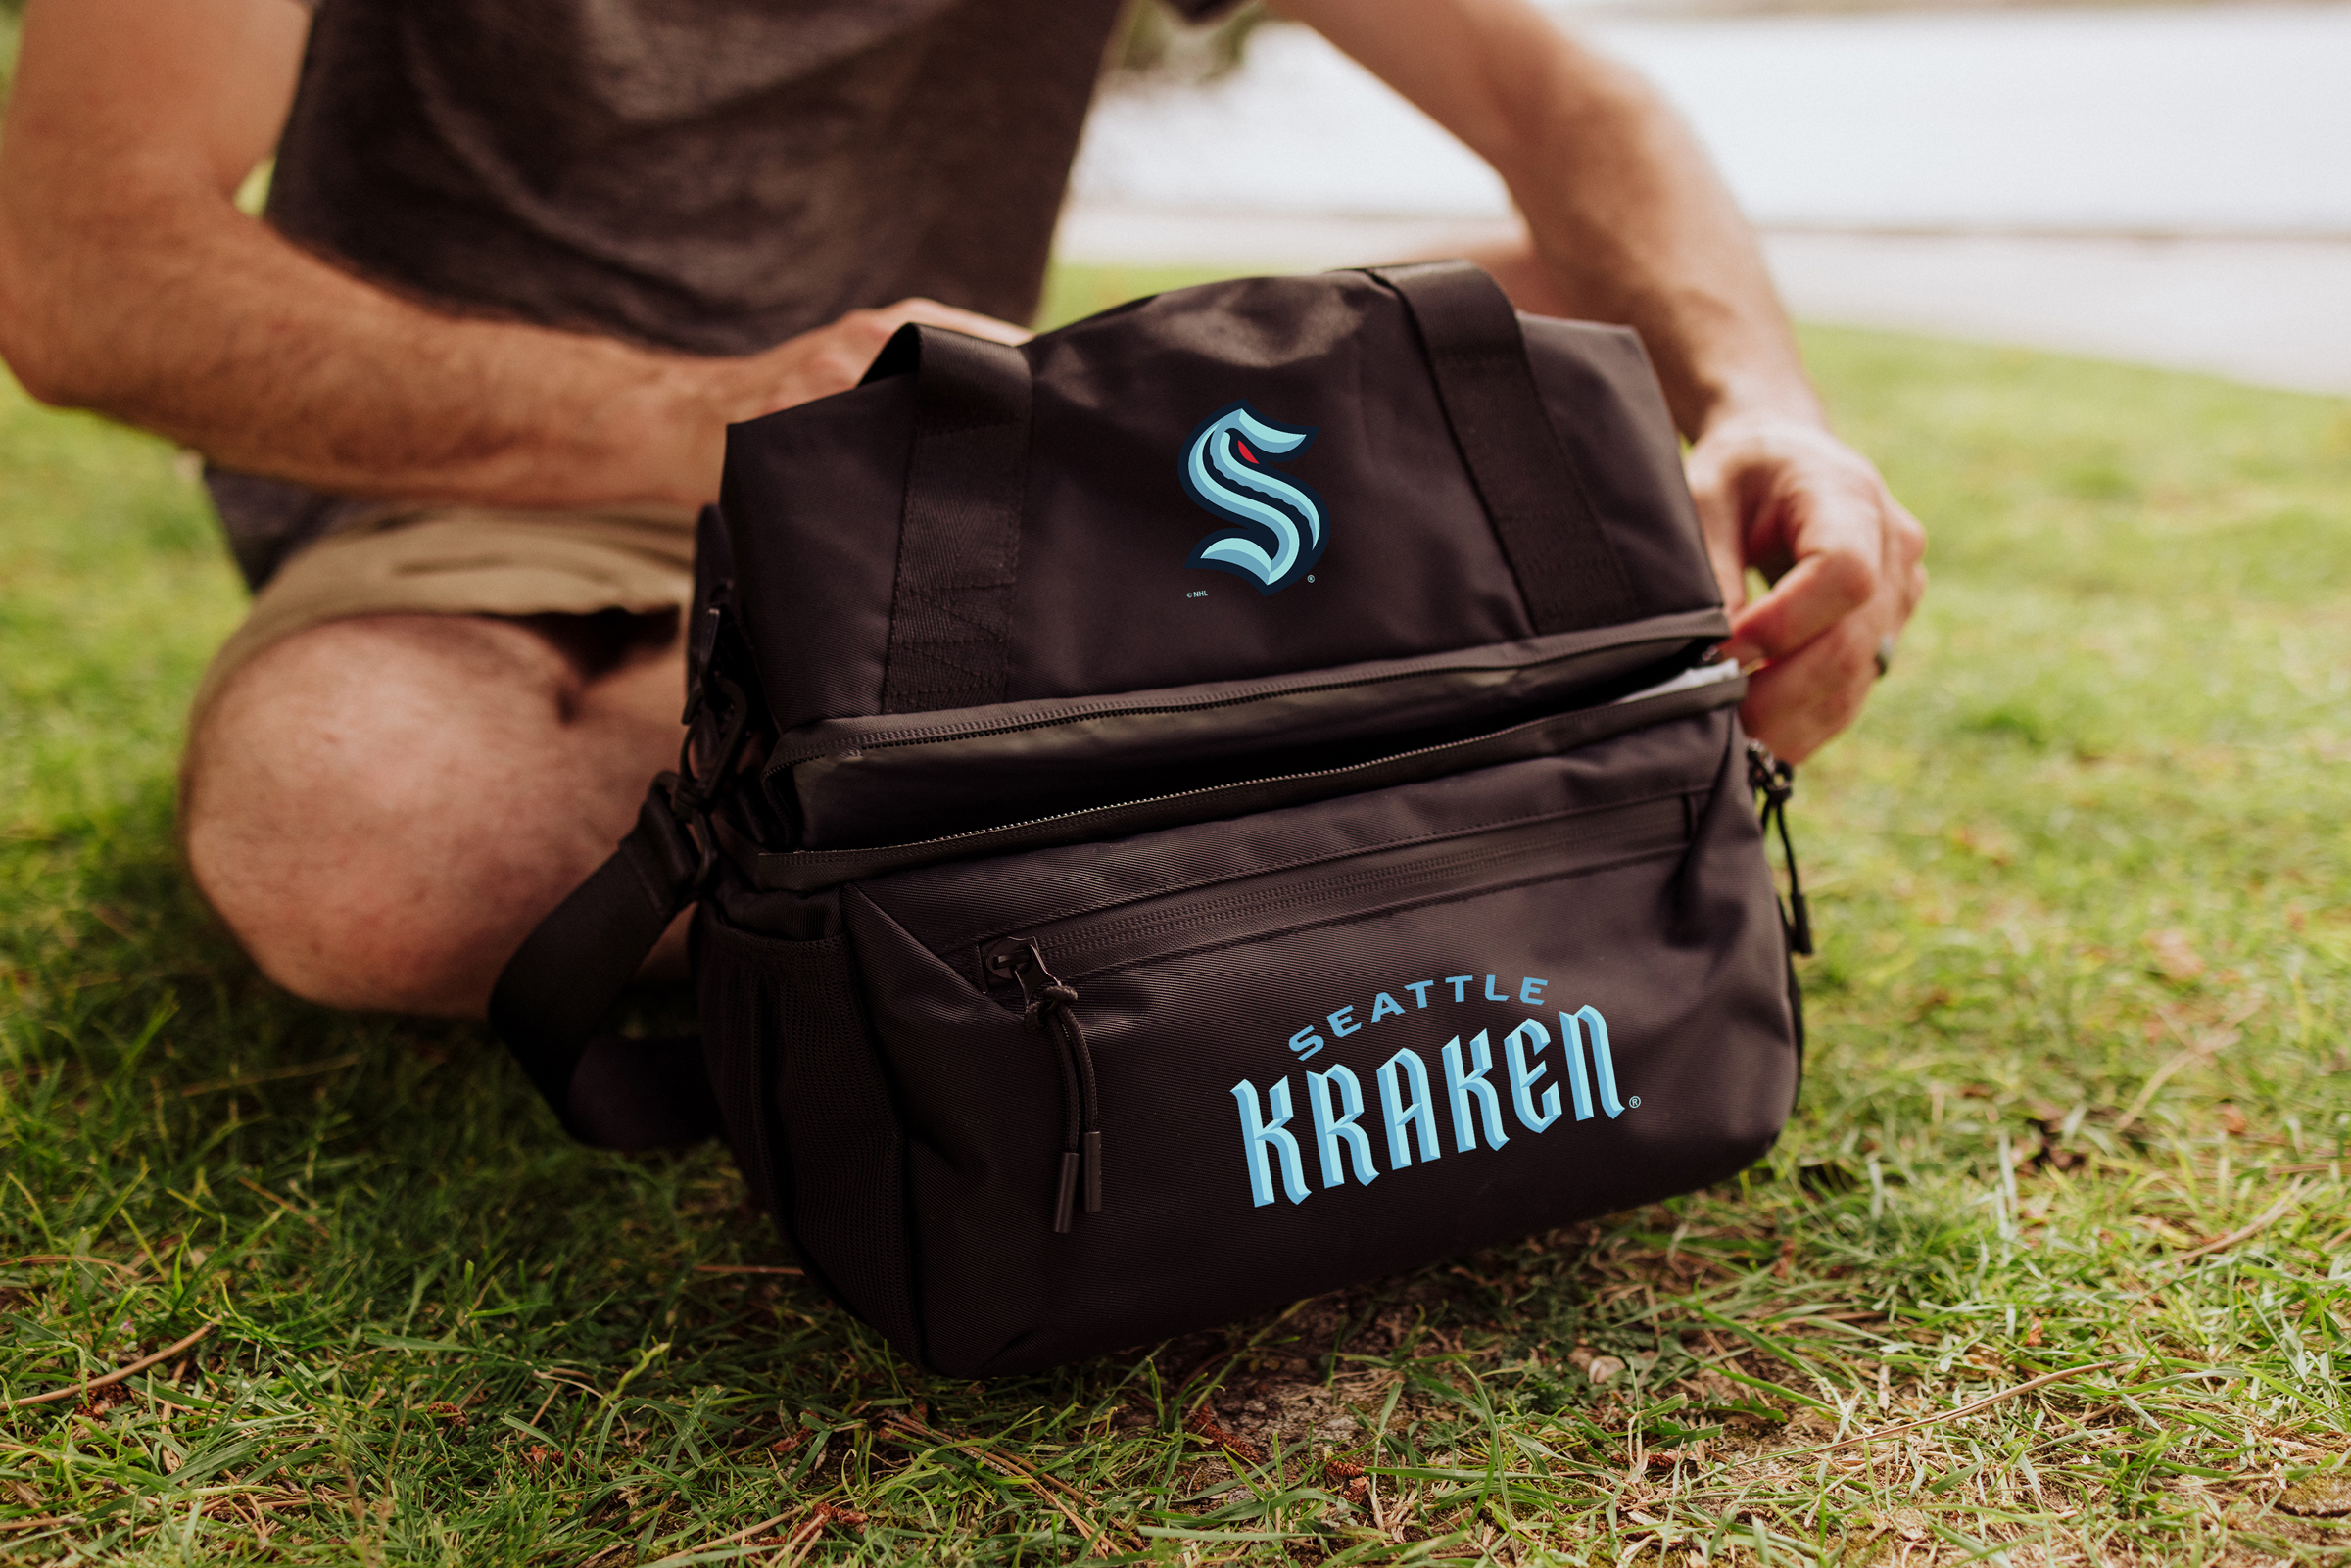 Seattle Kraken - Tarana Lunch Bag Cooler with Utensils